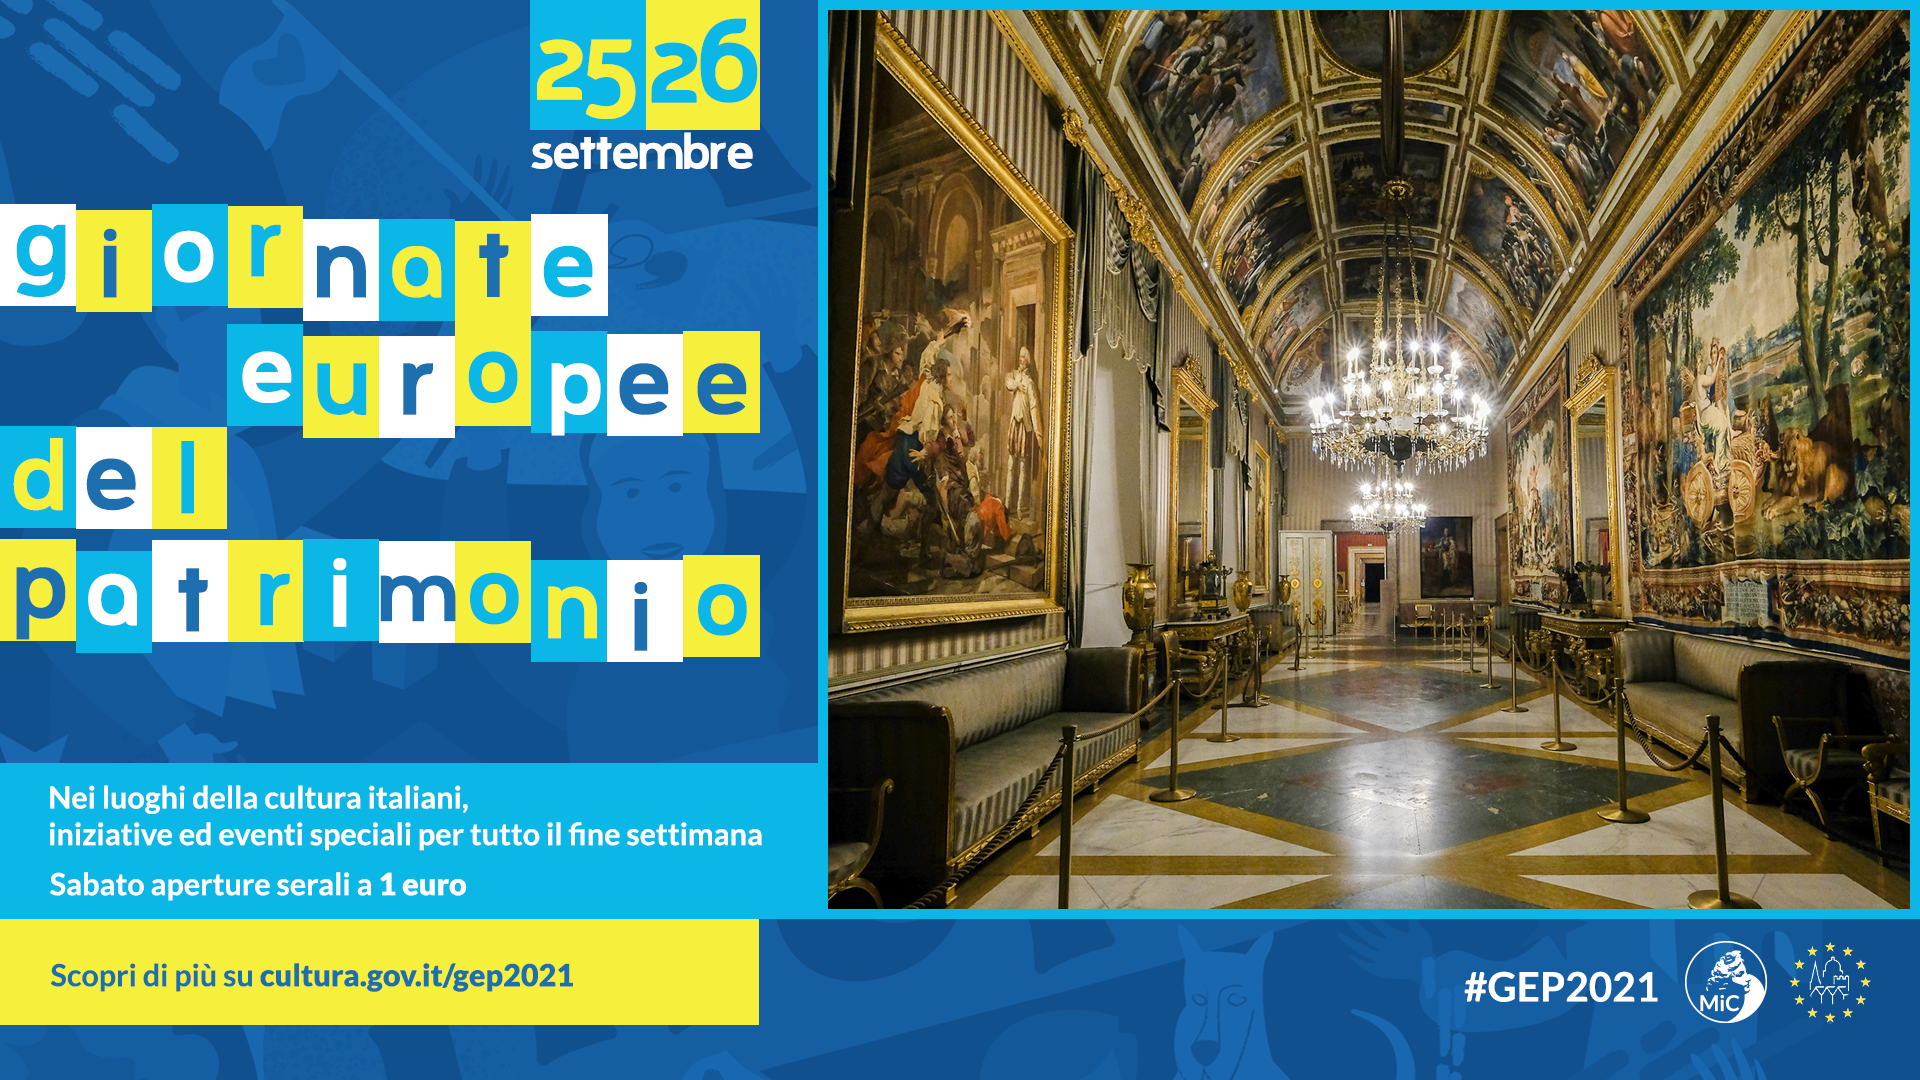 Palazzo Reale di Napoli, fitto programma per le Giornate Europee del Patrimonio